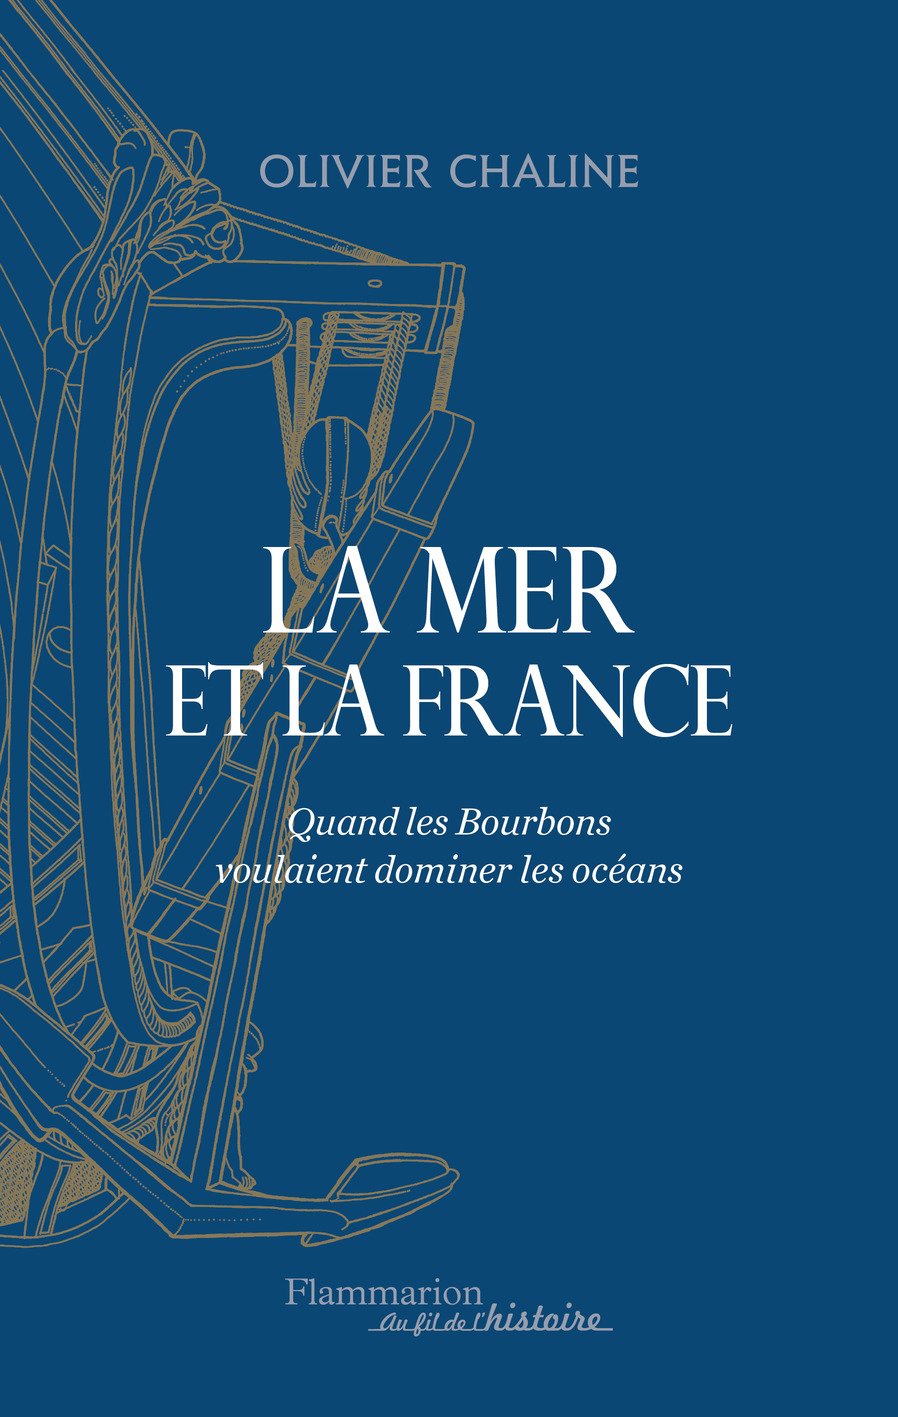 La mer et la France. Quand les Bourbons voulaient dominer les océans, 2016, 560 p.